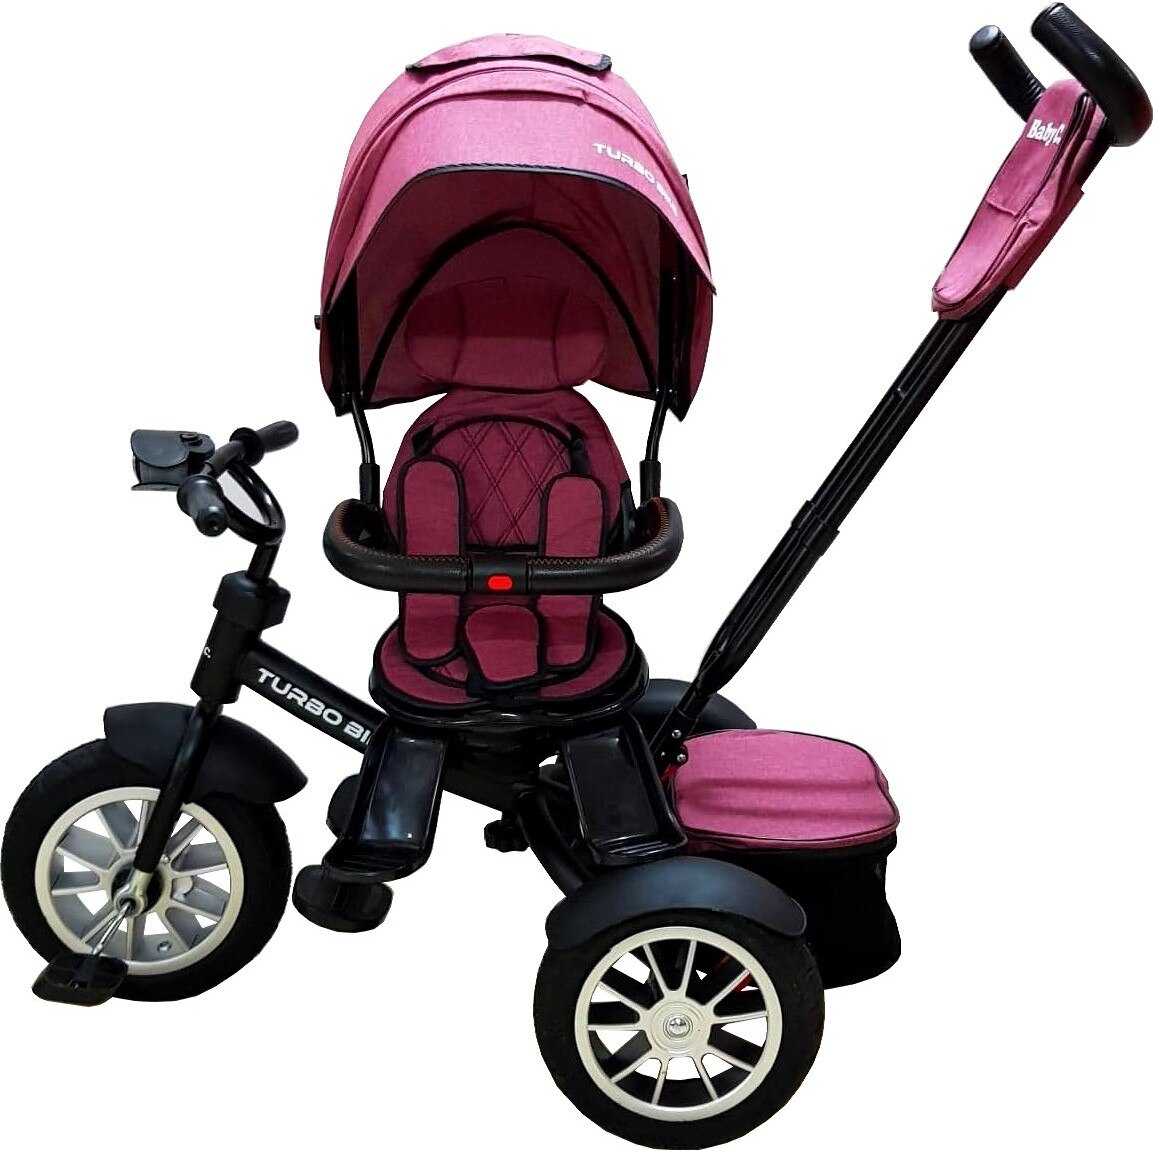 Tricicleta cu copertina Baby Care™ Turbo cu far luminos, roti din cauciuc, pozitie pedale si maner parinti, scaun cu invartire 360 grade, cadru metalic, dimensiuni 110X45X90 cm, Fucsia -